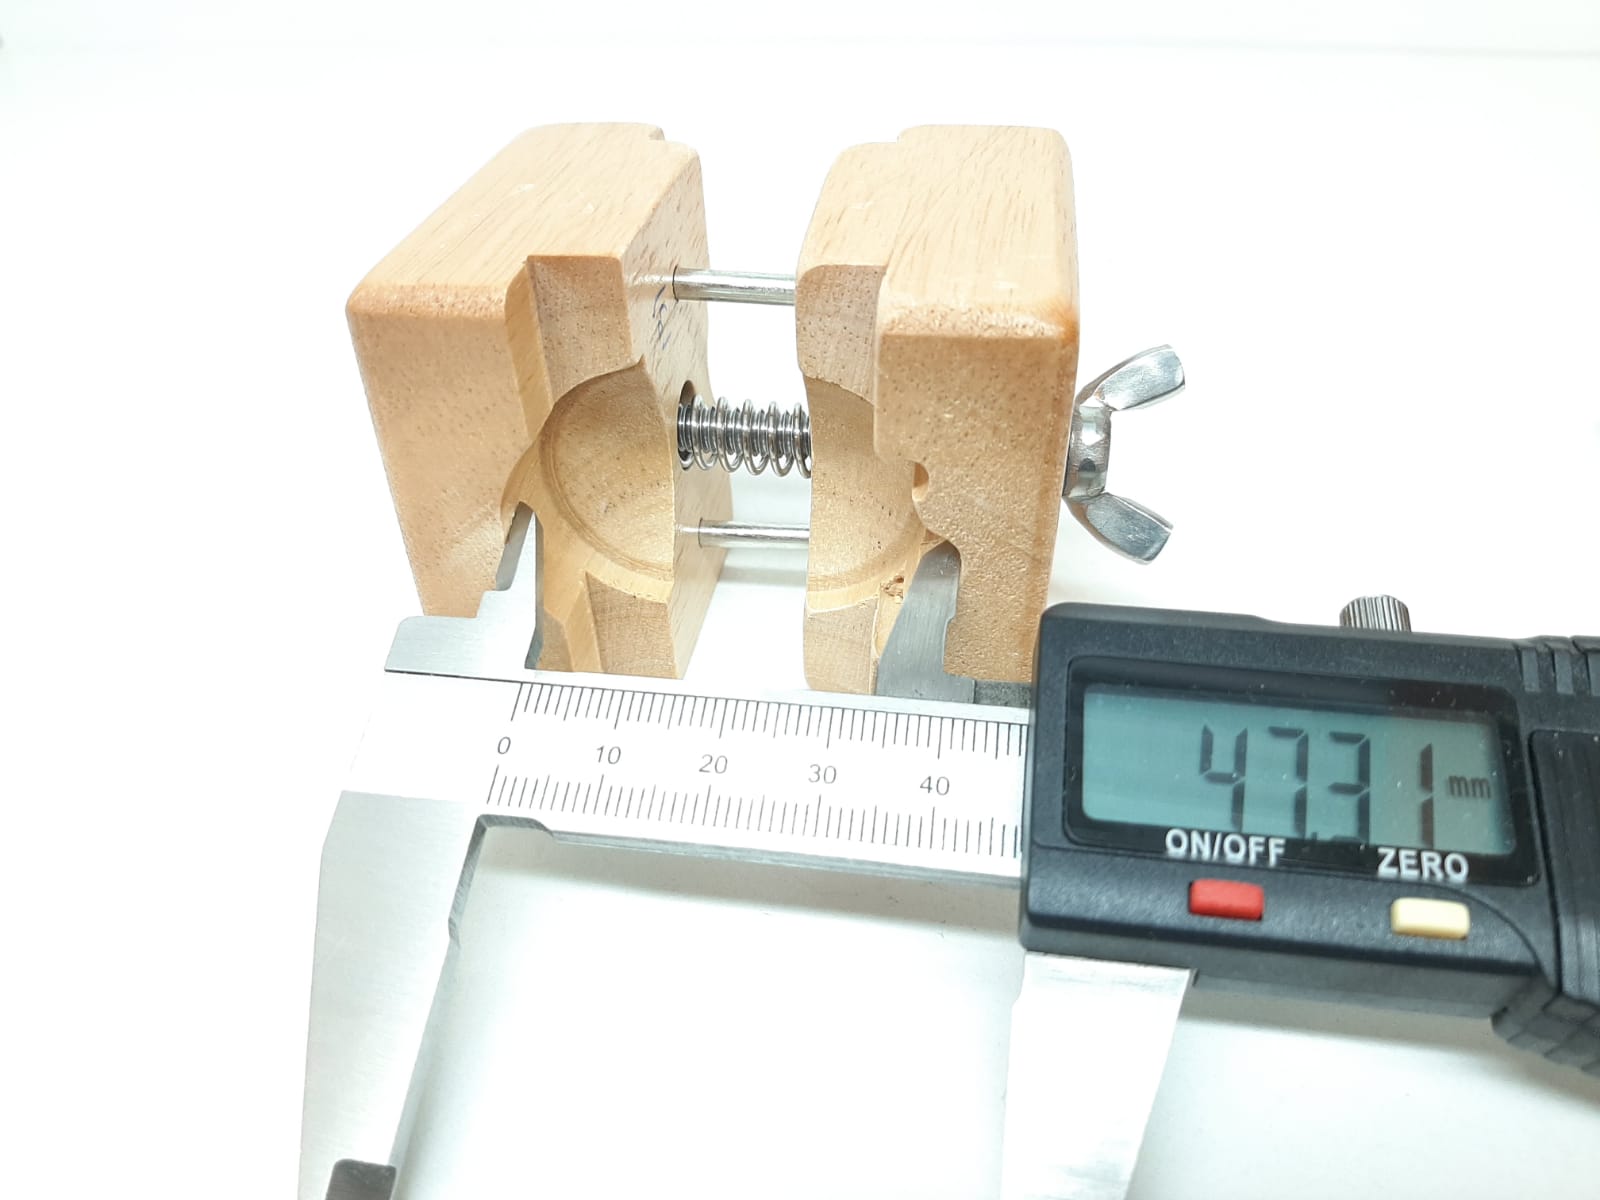 Klockhållare / Klämma i trä (Klocka/urmakeri verktyg)